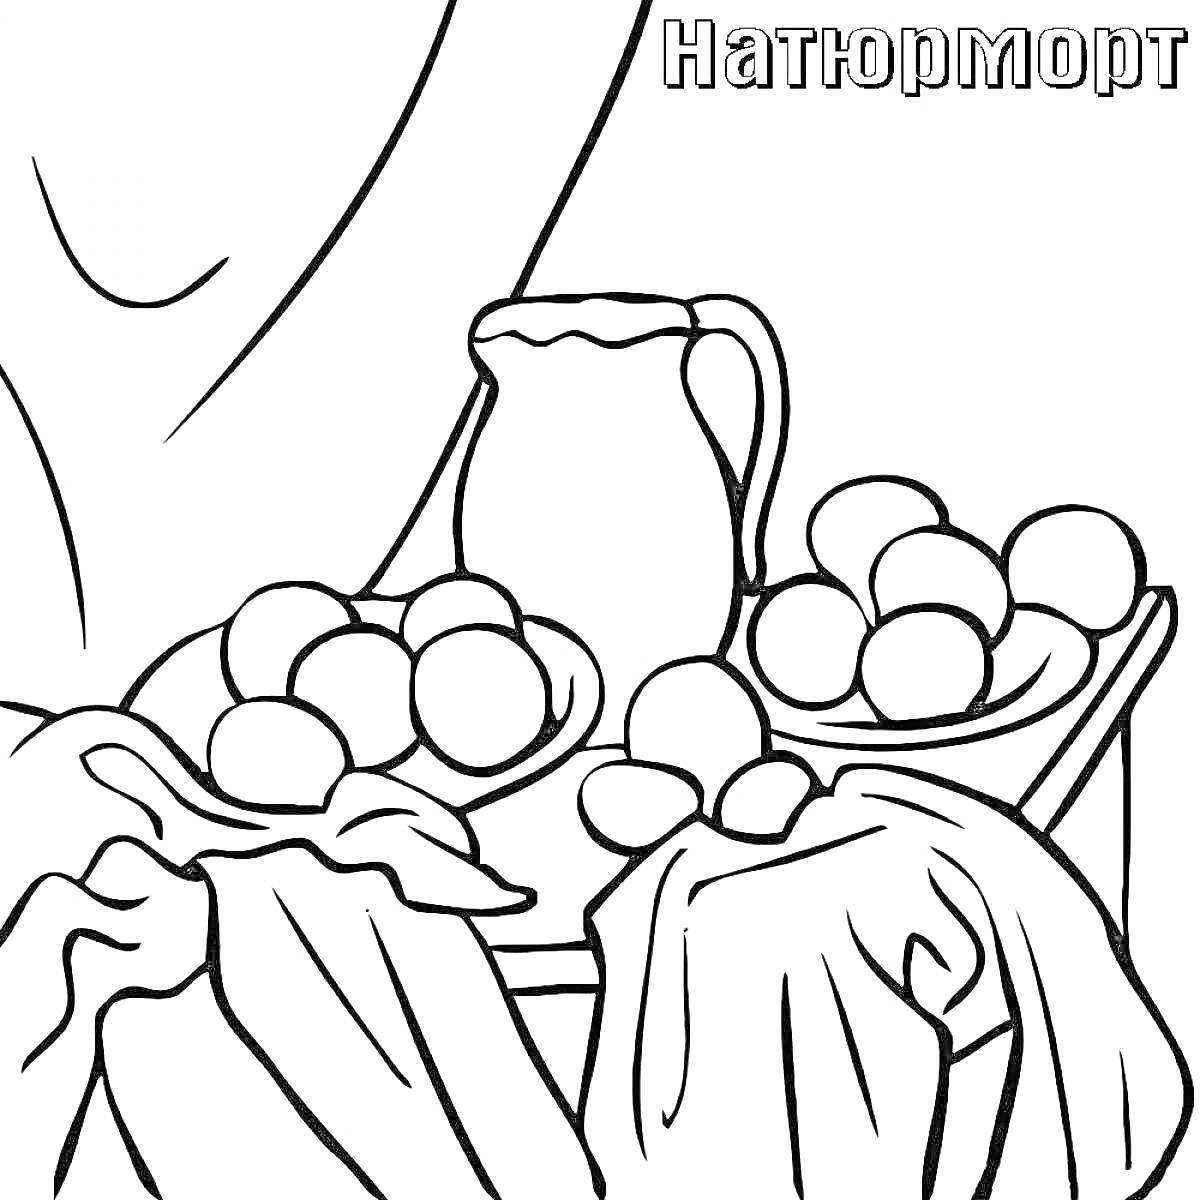 Раскраска Натюрморт с кувшином, яблоками и тканью